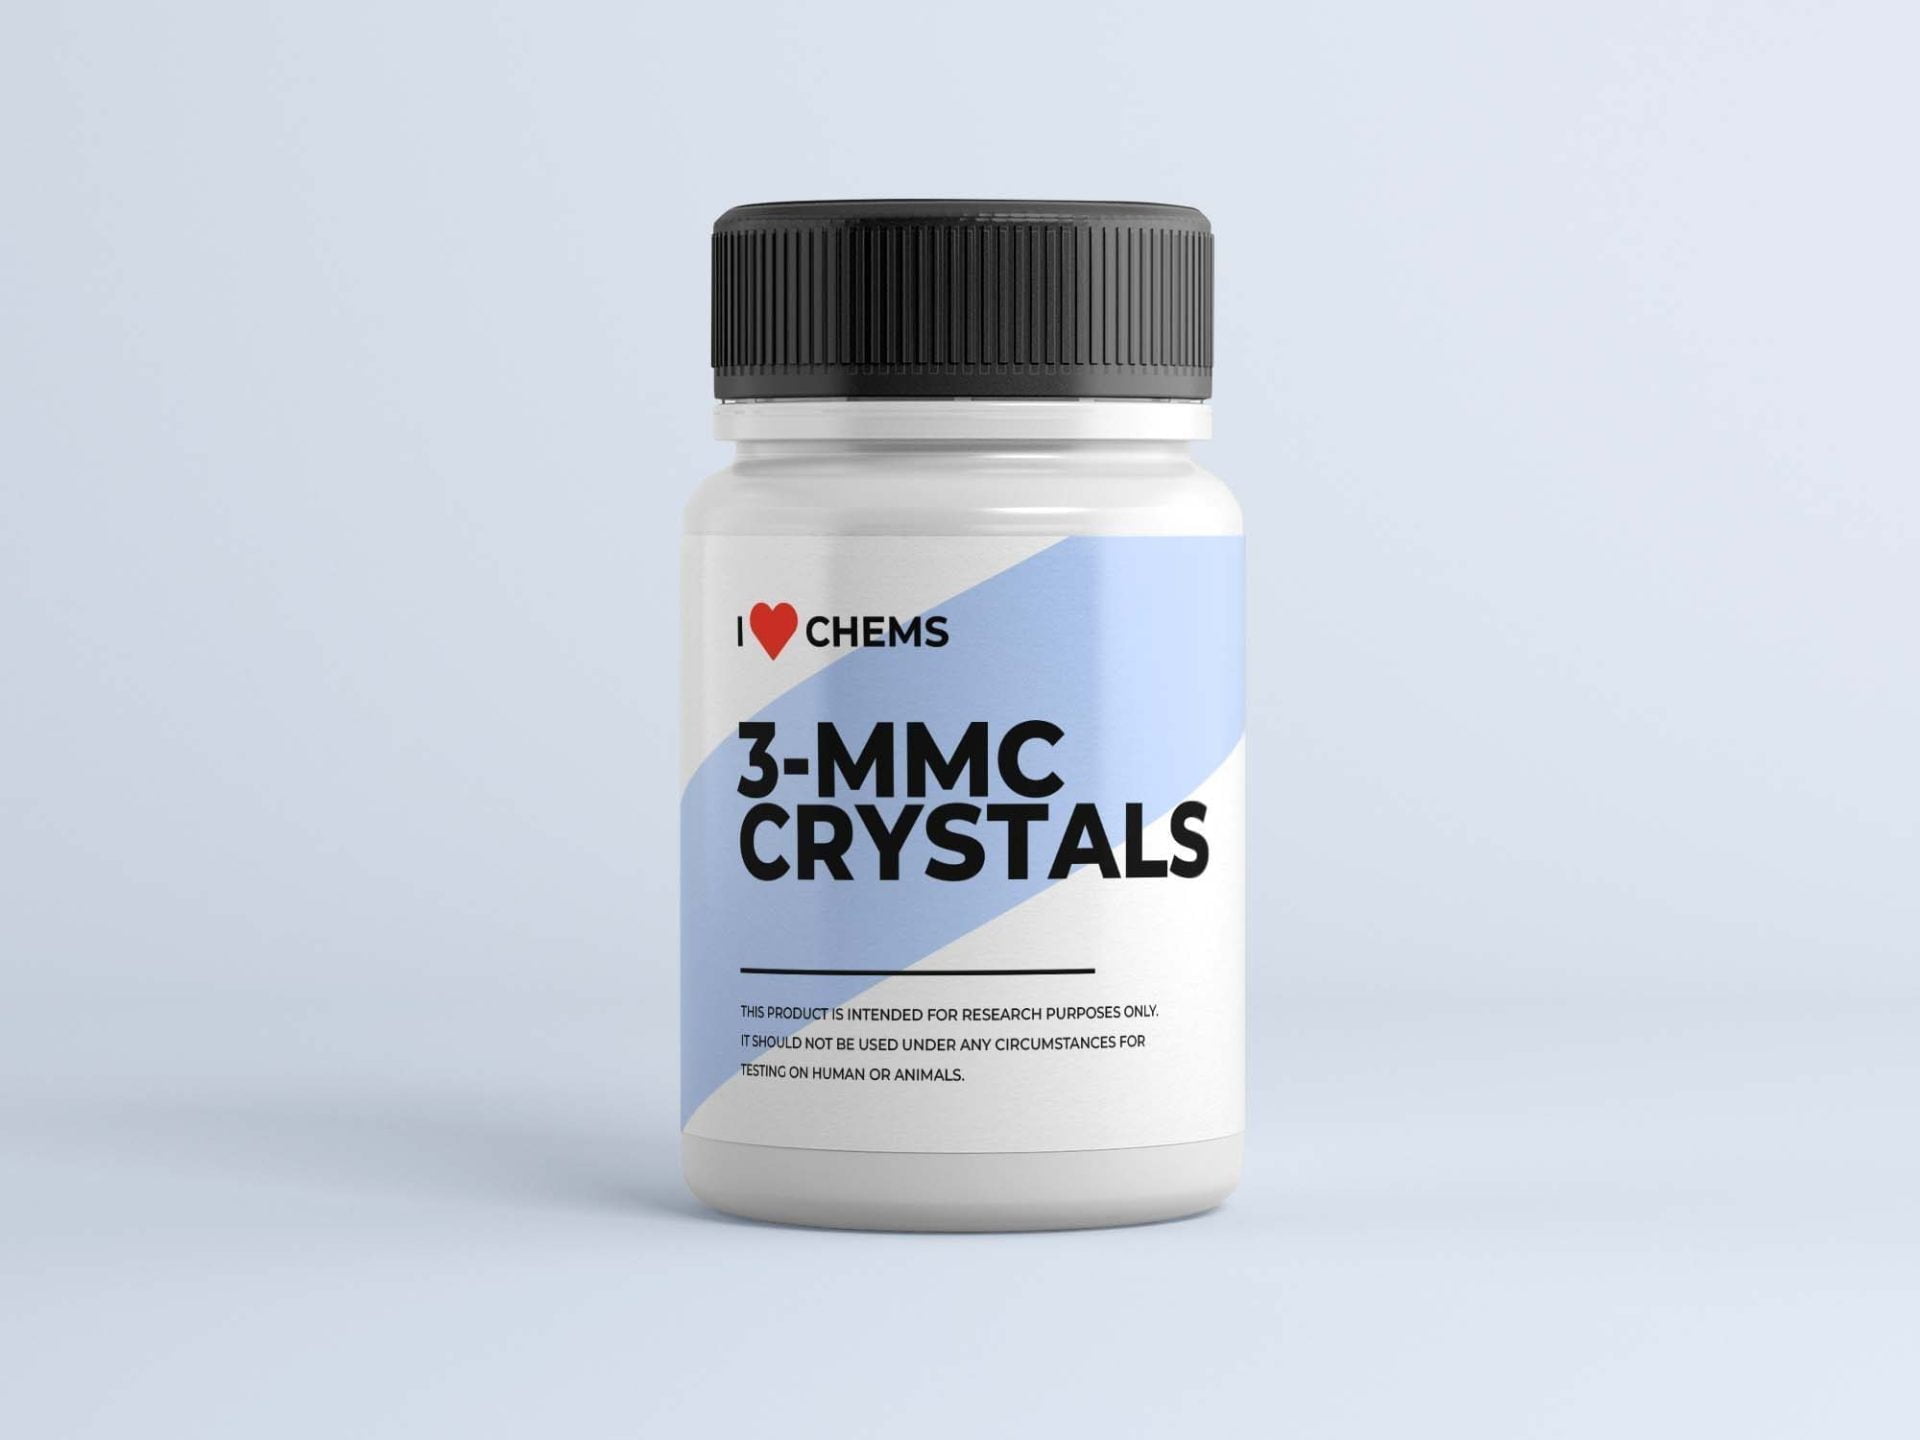 Achetez 3 cristaux MMC chez I Love Chems. 3 MMC Shop dans l'UE. Fournisseur RC de confiance